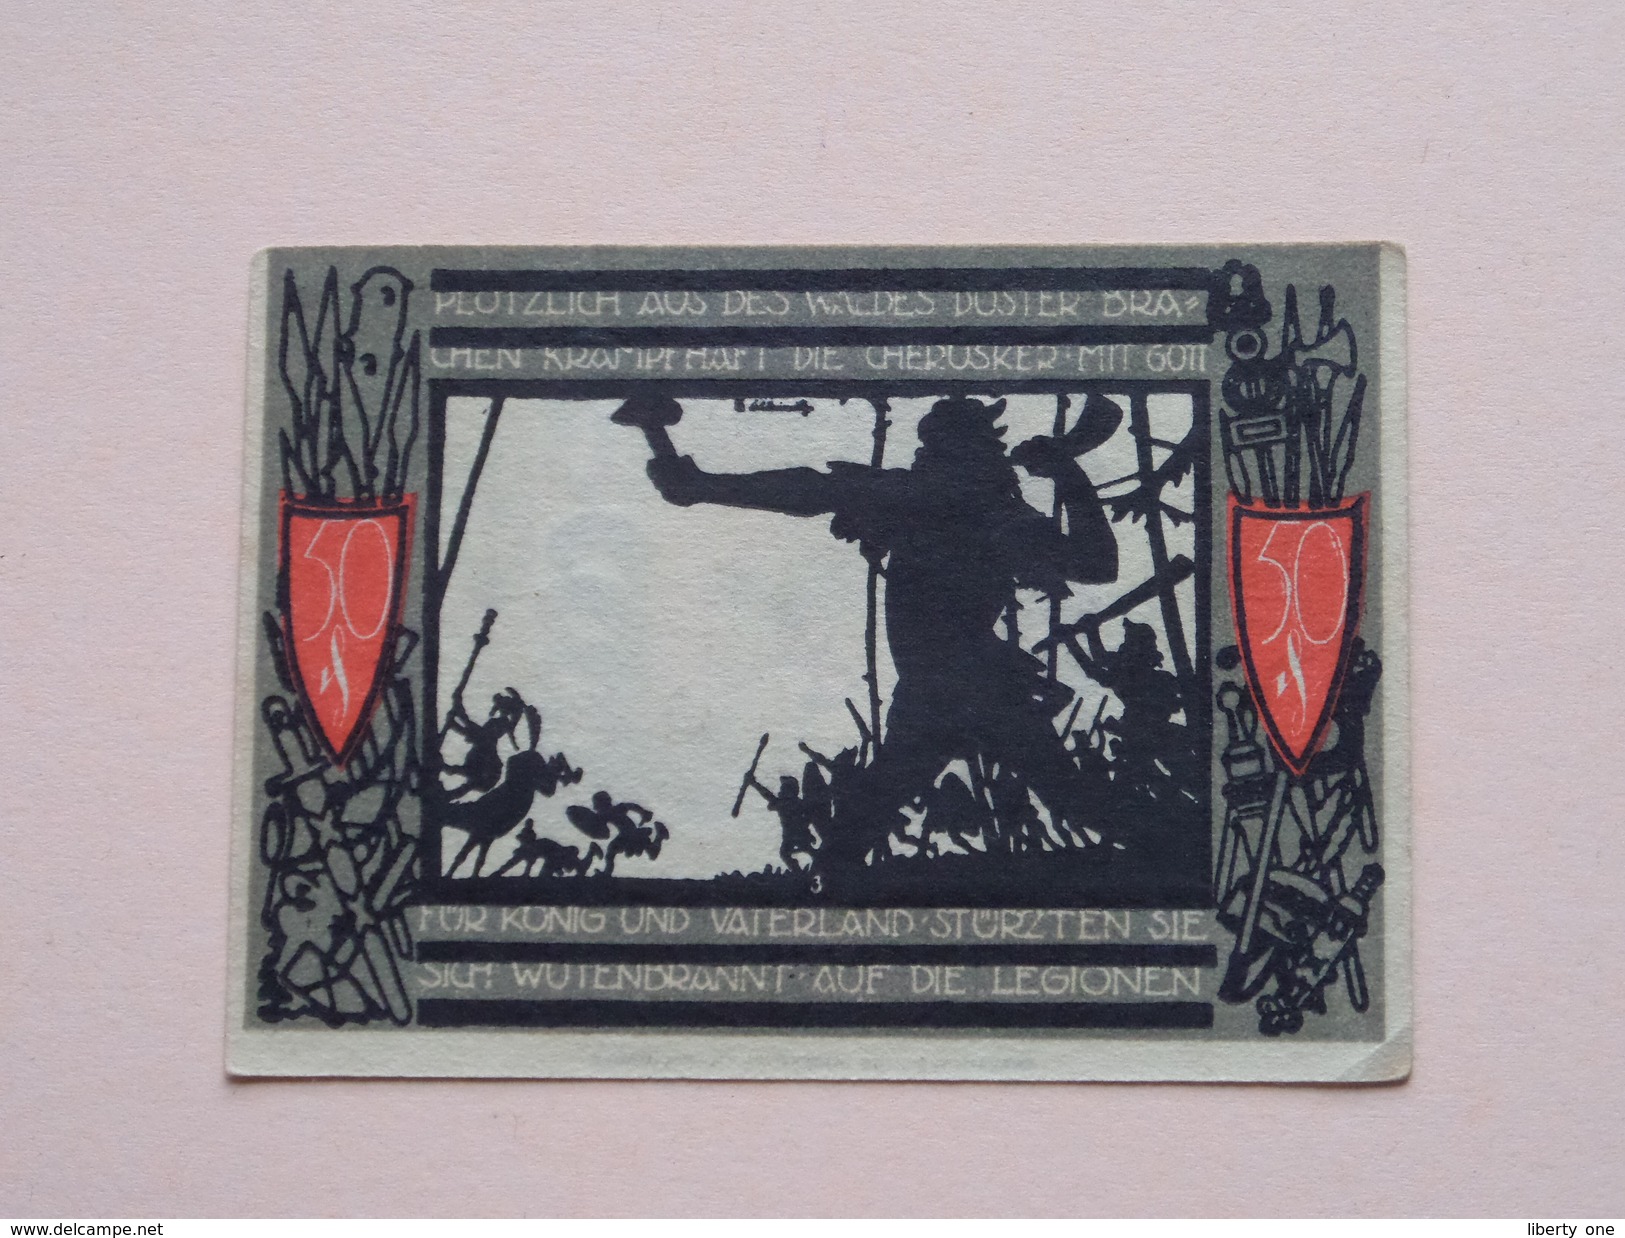 DETMOLD - 50 Pfennige NOTGELD - 1920 - 715590 ( Details Zie Foto ) ! - [11] Local Banknote Issues